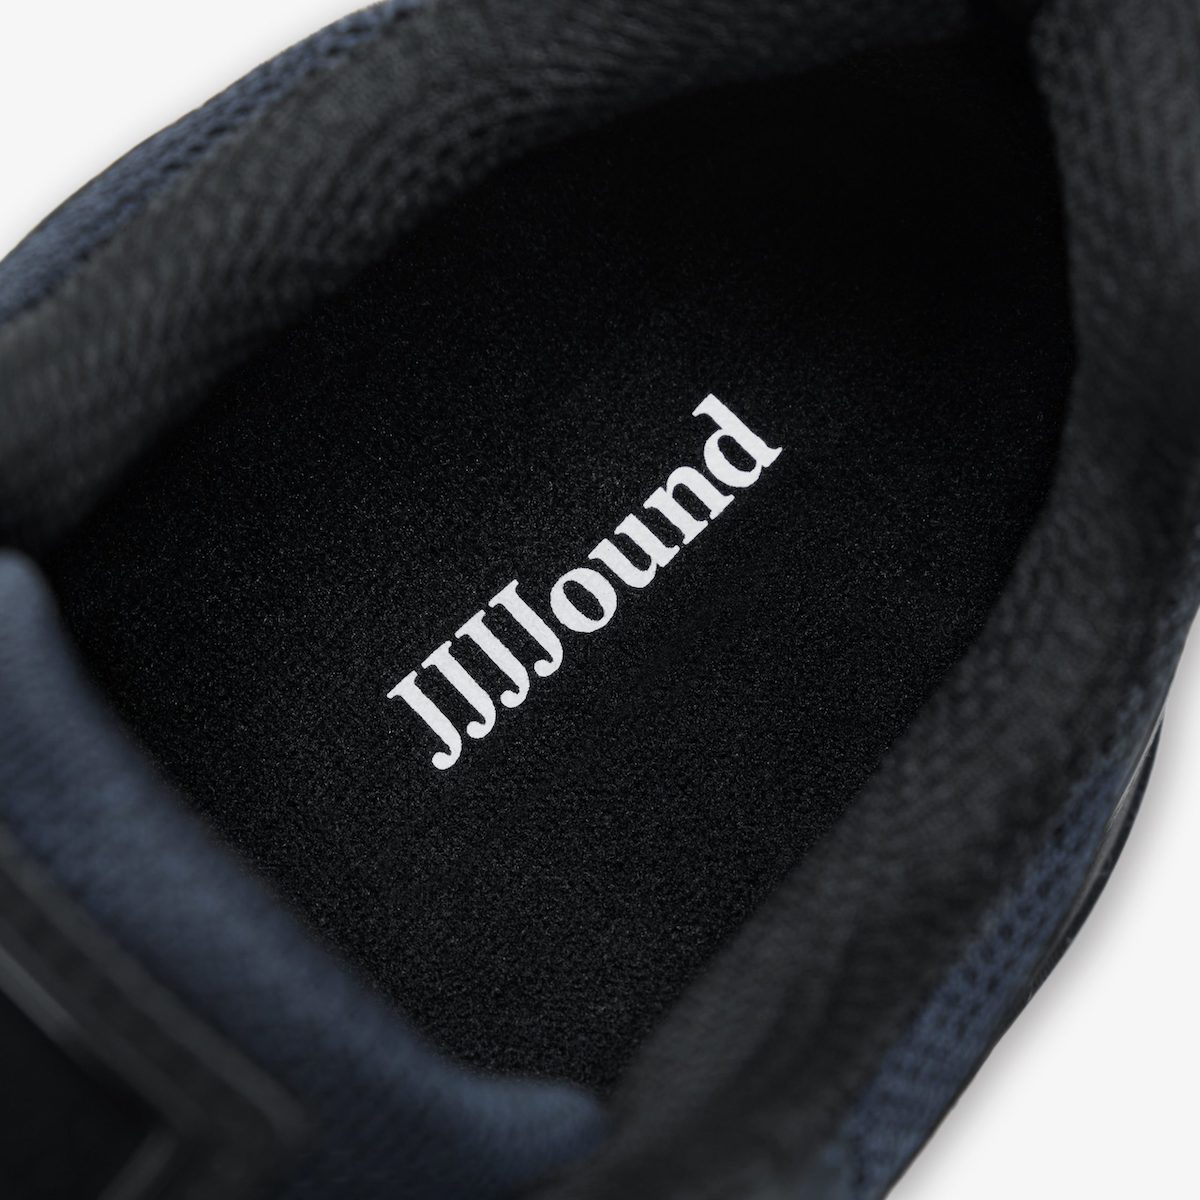 JJJJound x New Balance 990v4 Navy Release Date